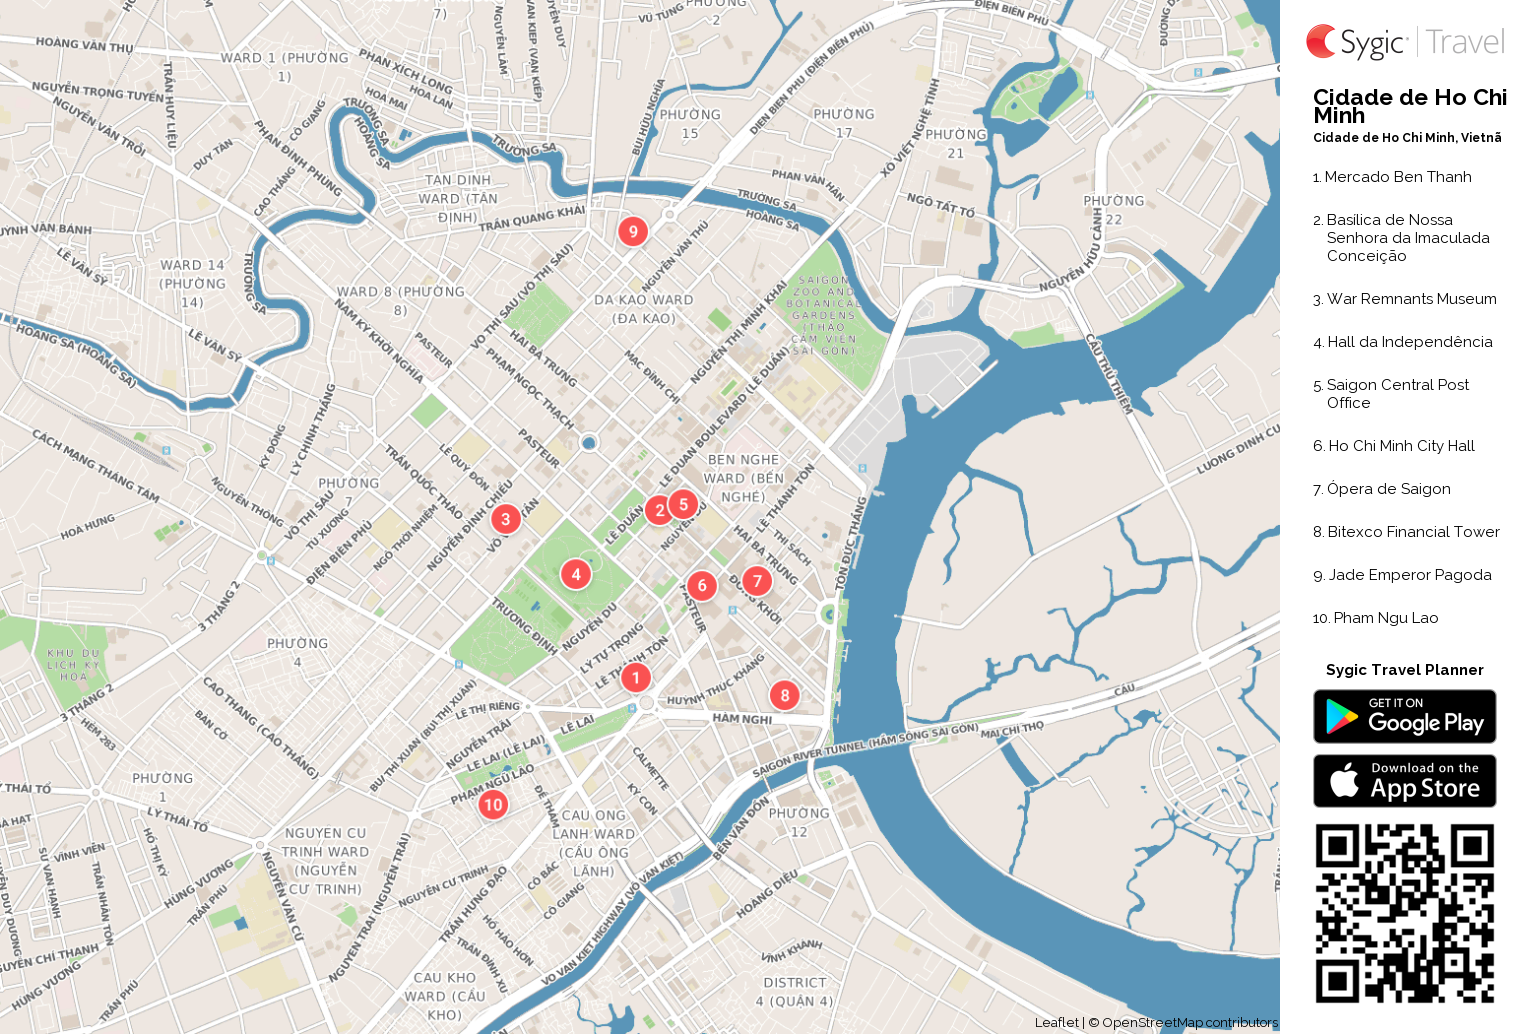 cidade-de-ho-chi-minh-mapa-turistico-em-pdf